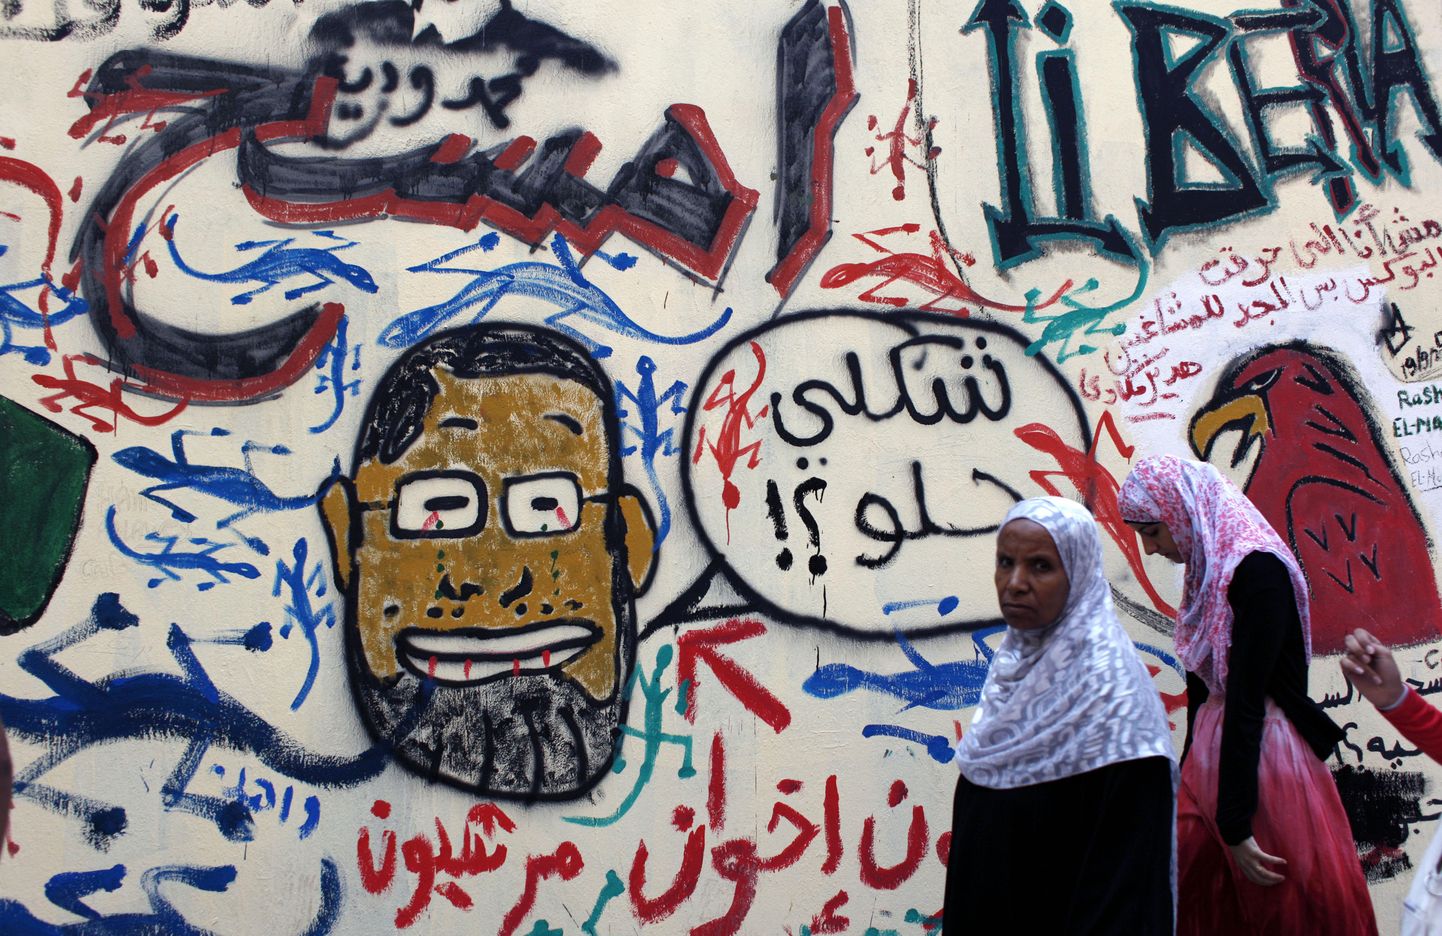 Naised seina ääres, kuhu on joonistatud Egiptuse presidenti Mohamed Morsit kujutav karikatuur.